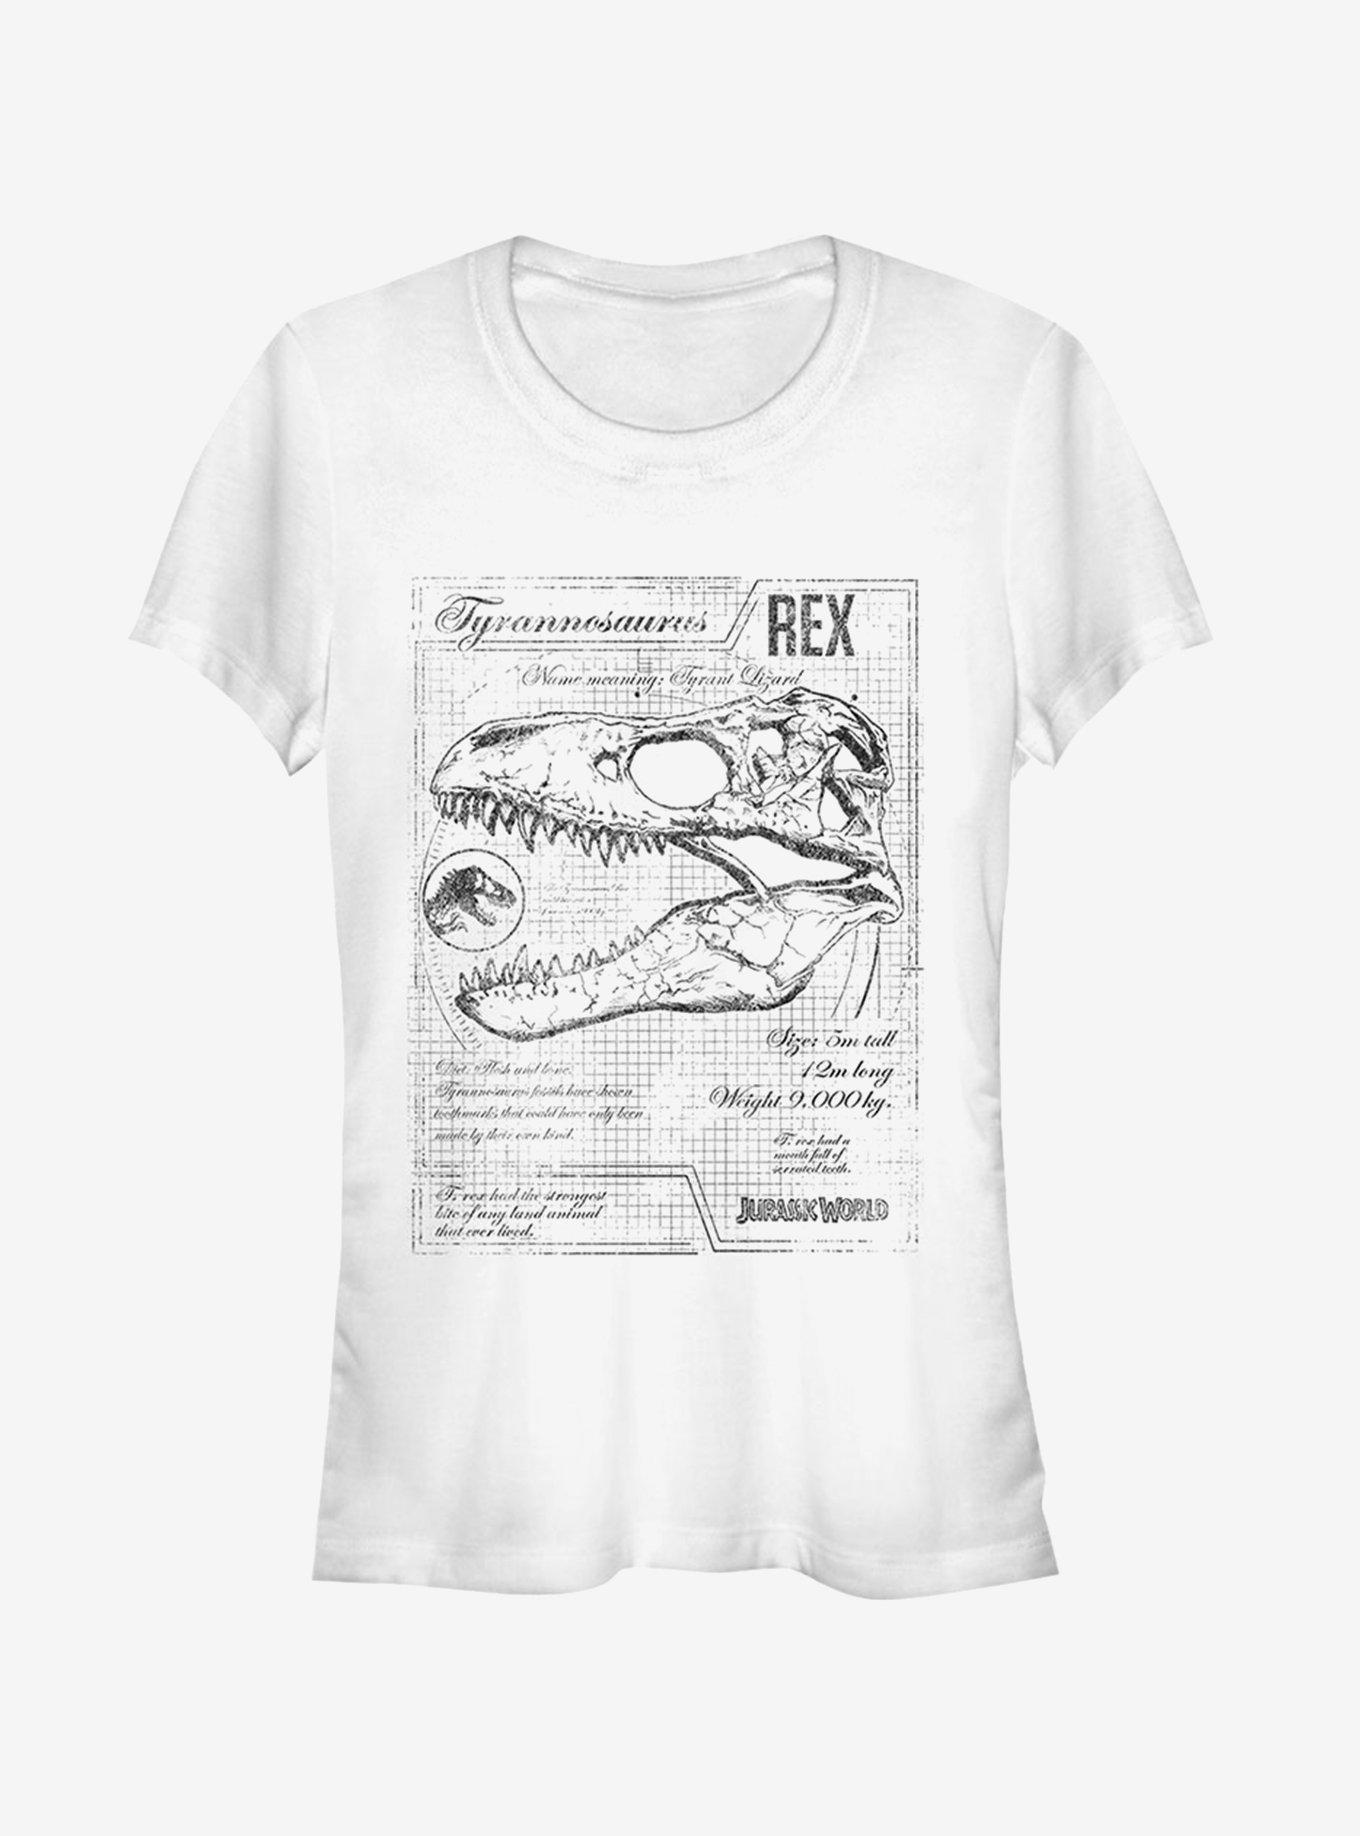 Jurassic World Fallen Kingdom T. Rex Schematics Girls T-Shirt, WHITE, hi-res